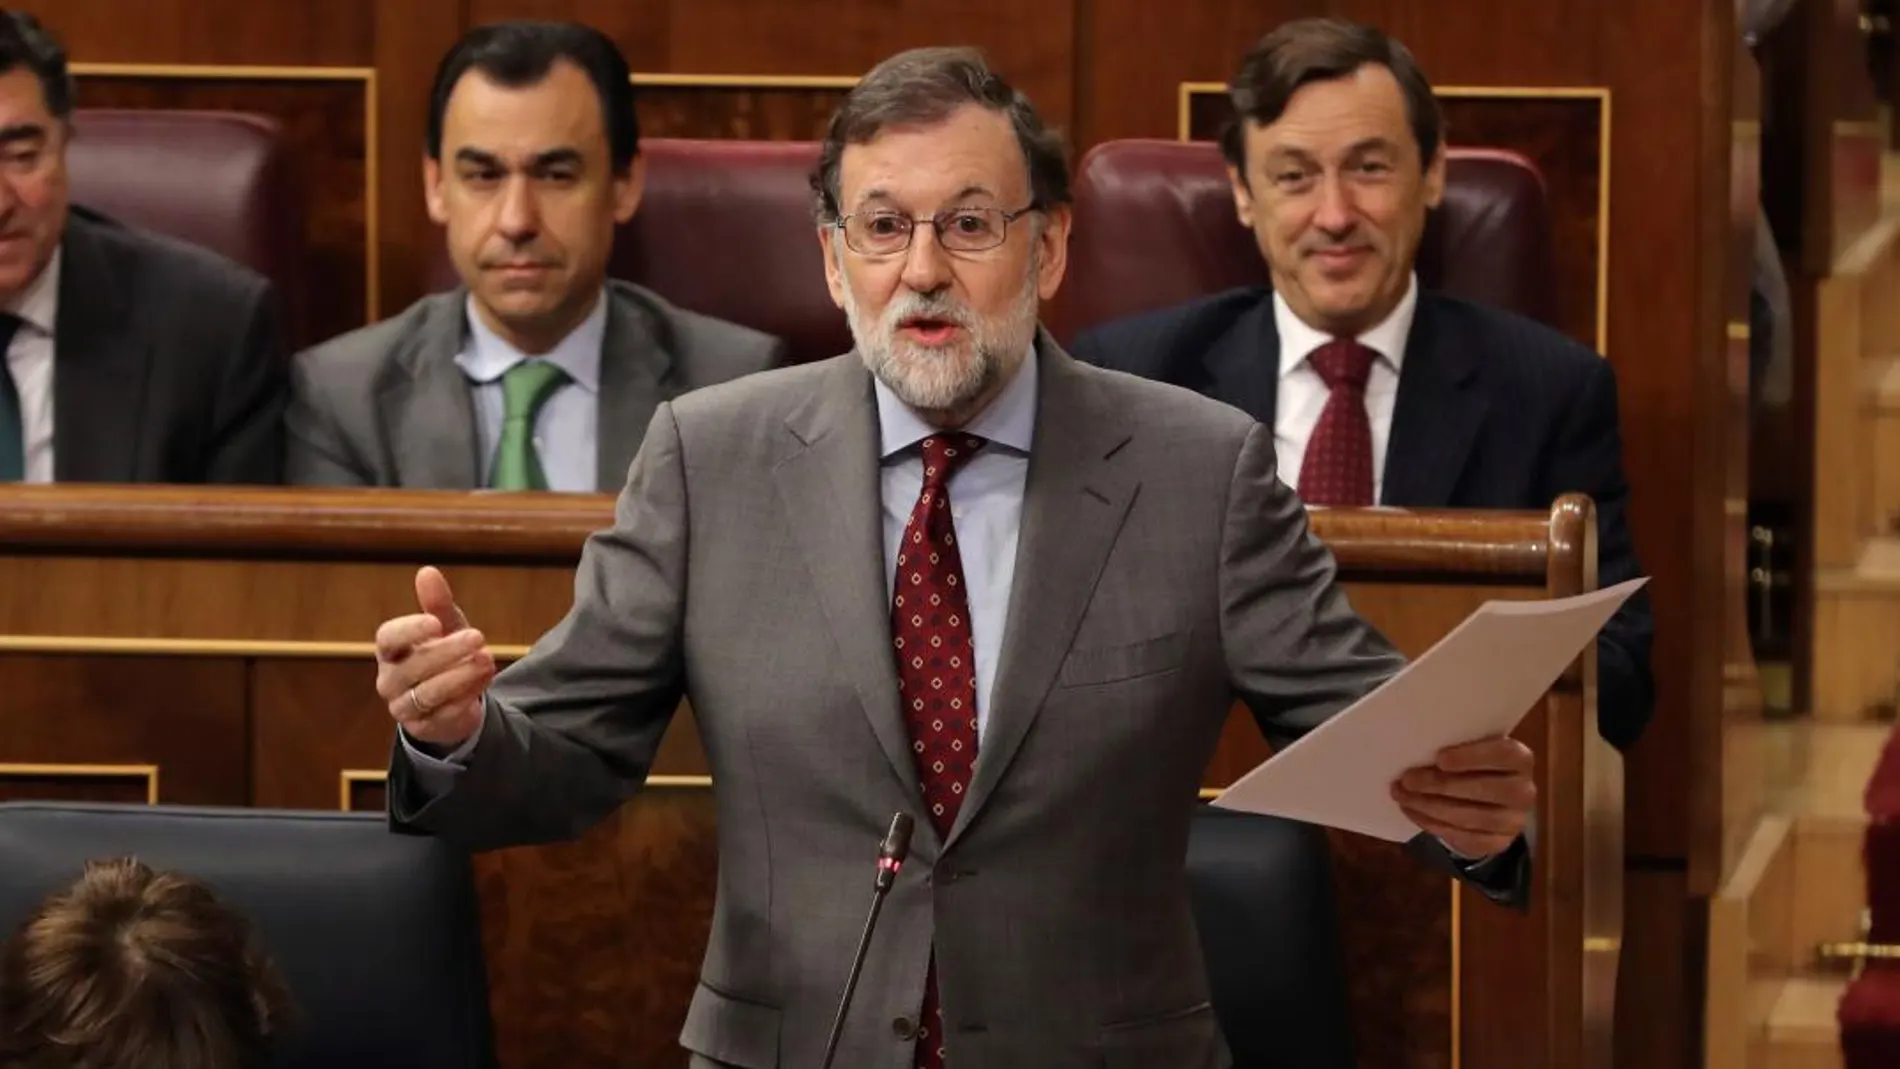 El presidente del Gobierno, Mariano Rajoy, interviene en la sesión al Ejecutivo celebrada hoy en el Congreso